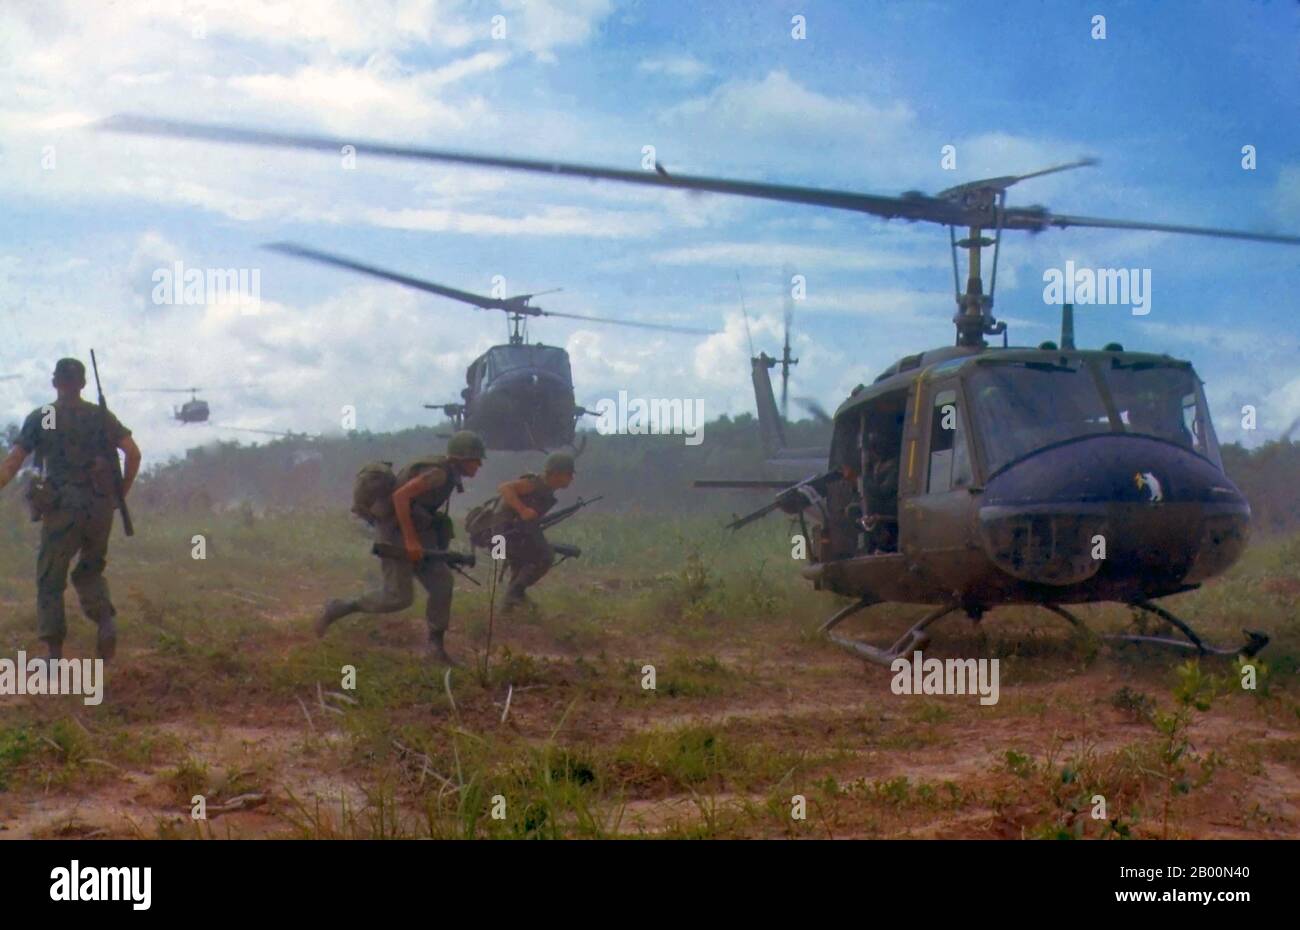 Vietnam: Huey UH-1D Helicopters spielten eine wichtige Rolle bei den Land- und Luftoperationen des US-Militärs. Hier UH-1Ds Luftlift Mitglieder des 2. Bataillons, 14. Infanterie-Regiment von einem Rubber Plantation Area zu einem neuen Einsatzgebiet während einer Such-und Zerstörungsmission nordöstlich von Cu Chi, Süd-Vietnam, 1966 durchgeführt. Stockfoto